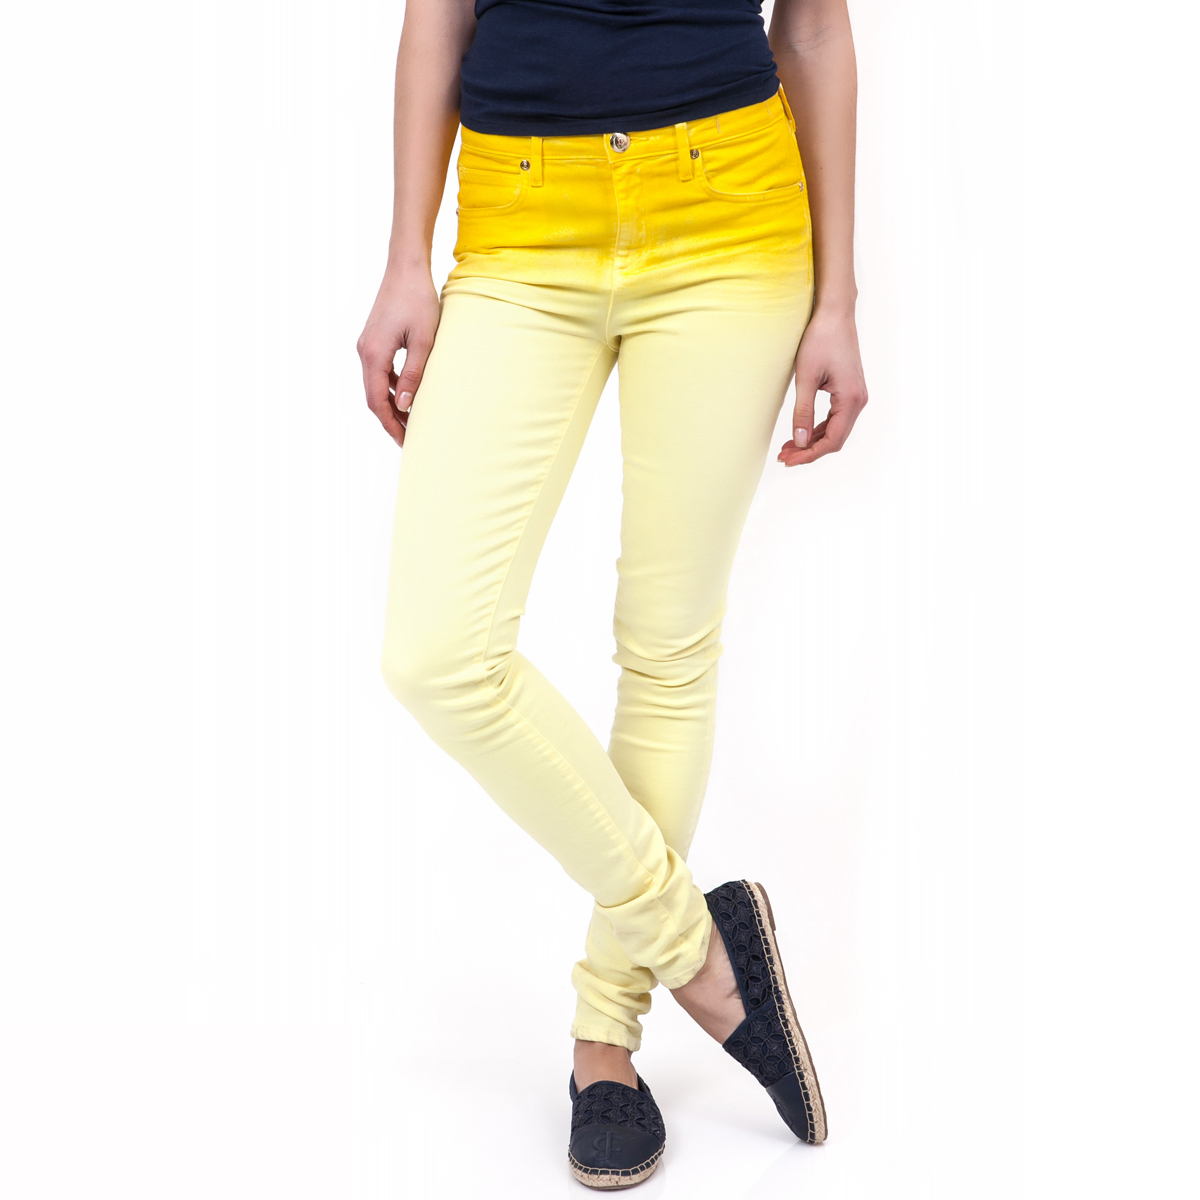 Γυναικεία/Ρούχα/Παντελόνια/Skinny JUICY COUTURE - Γυναικείο παντελόνι Juicy Couture κίτρινο